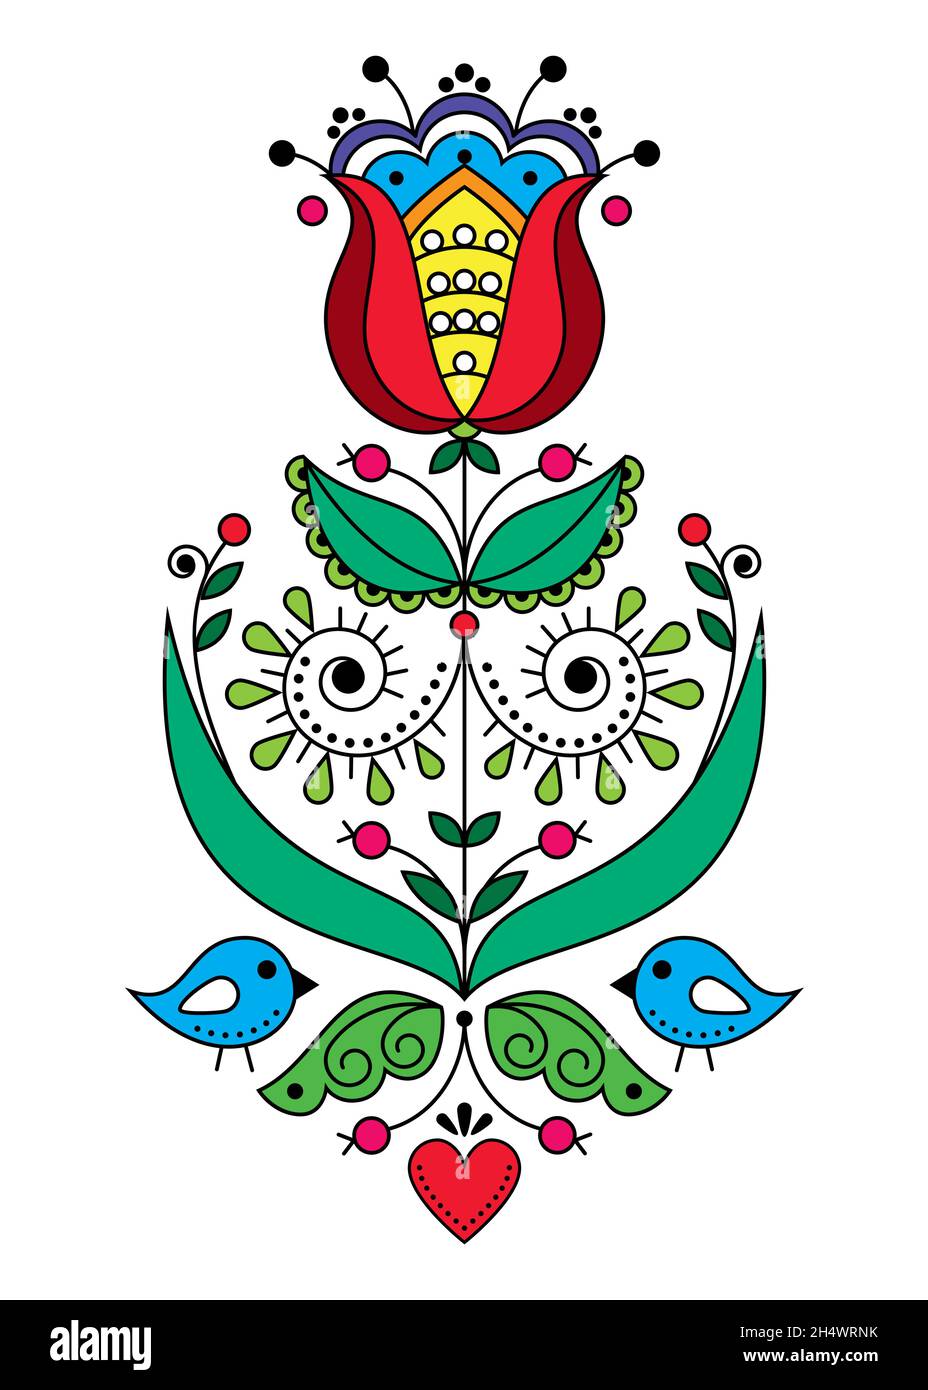 Valentinstag skandinavische Volkskunst Vektor Grußkarte Design mit Blumen und Vögel, retro Natur Muster von der traditionellen Stickerei inspiriert Stock Vektor